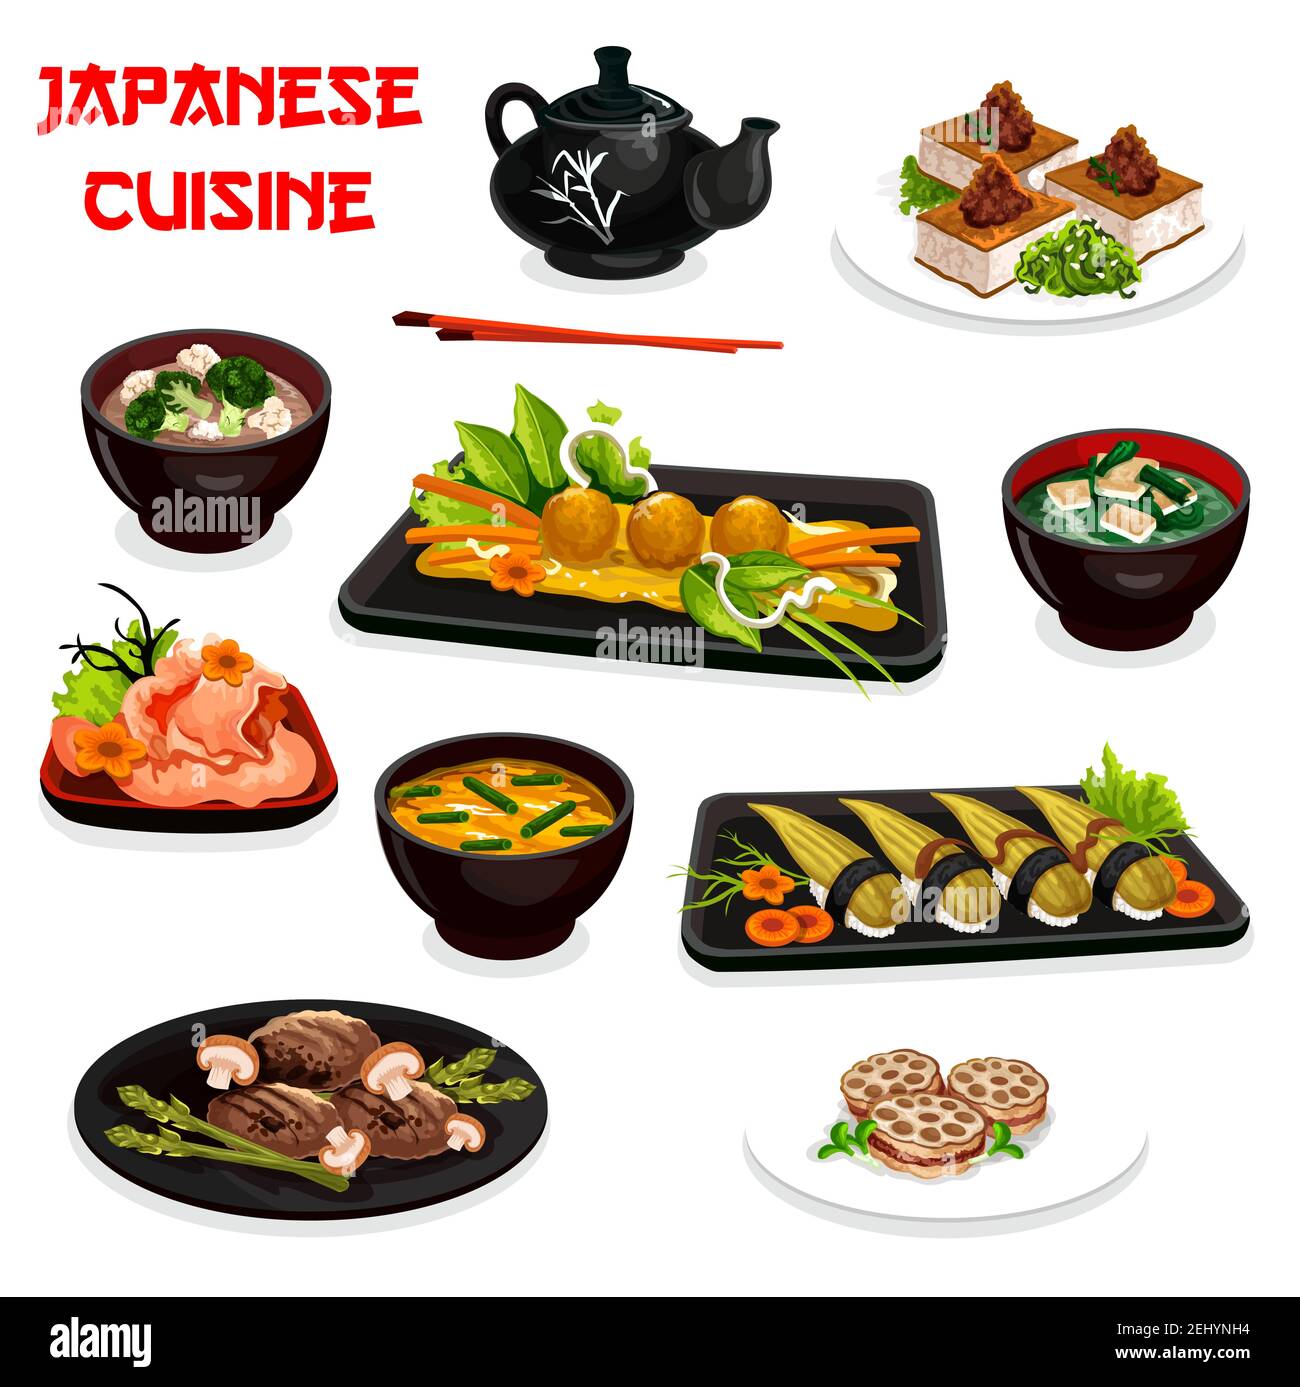 Cuisine japonaise à motifs vectoriels et plats asiatiques traditionnels. Tofu frit, sushi nigiri et soupes miso avec œufs, algues, brocoli et gingembre, Illustration de Vecteur